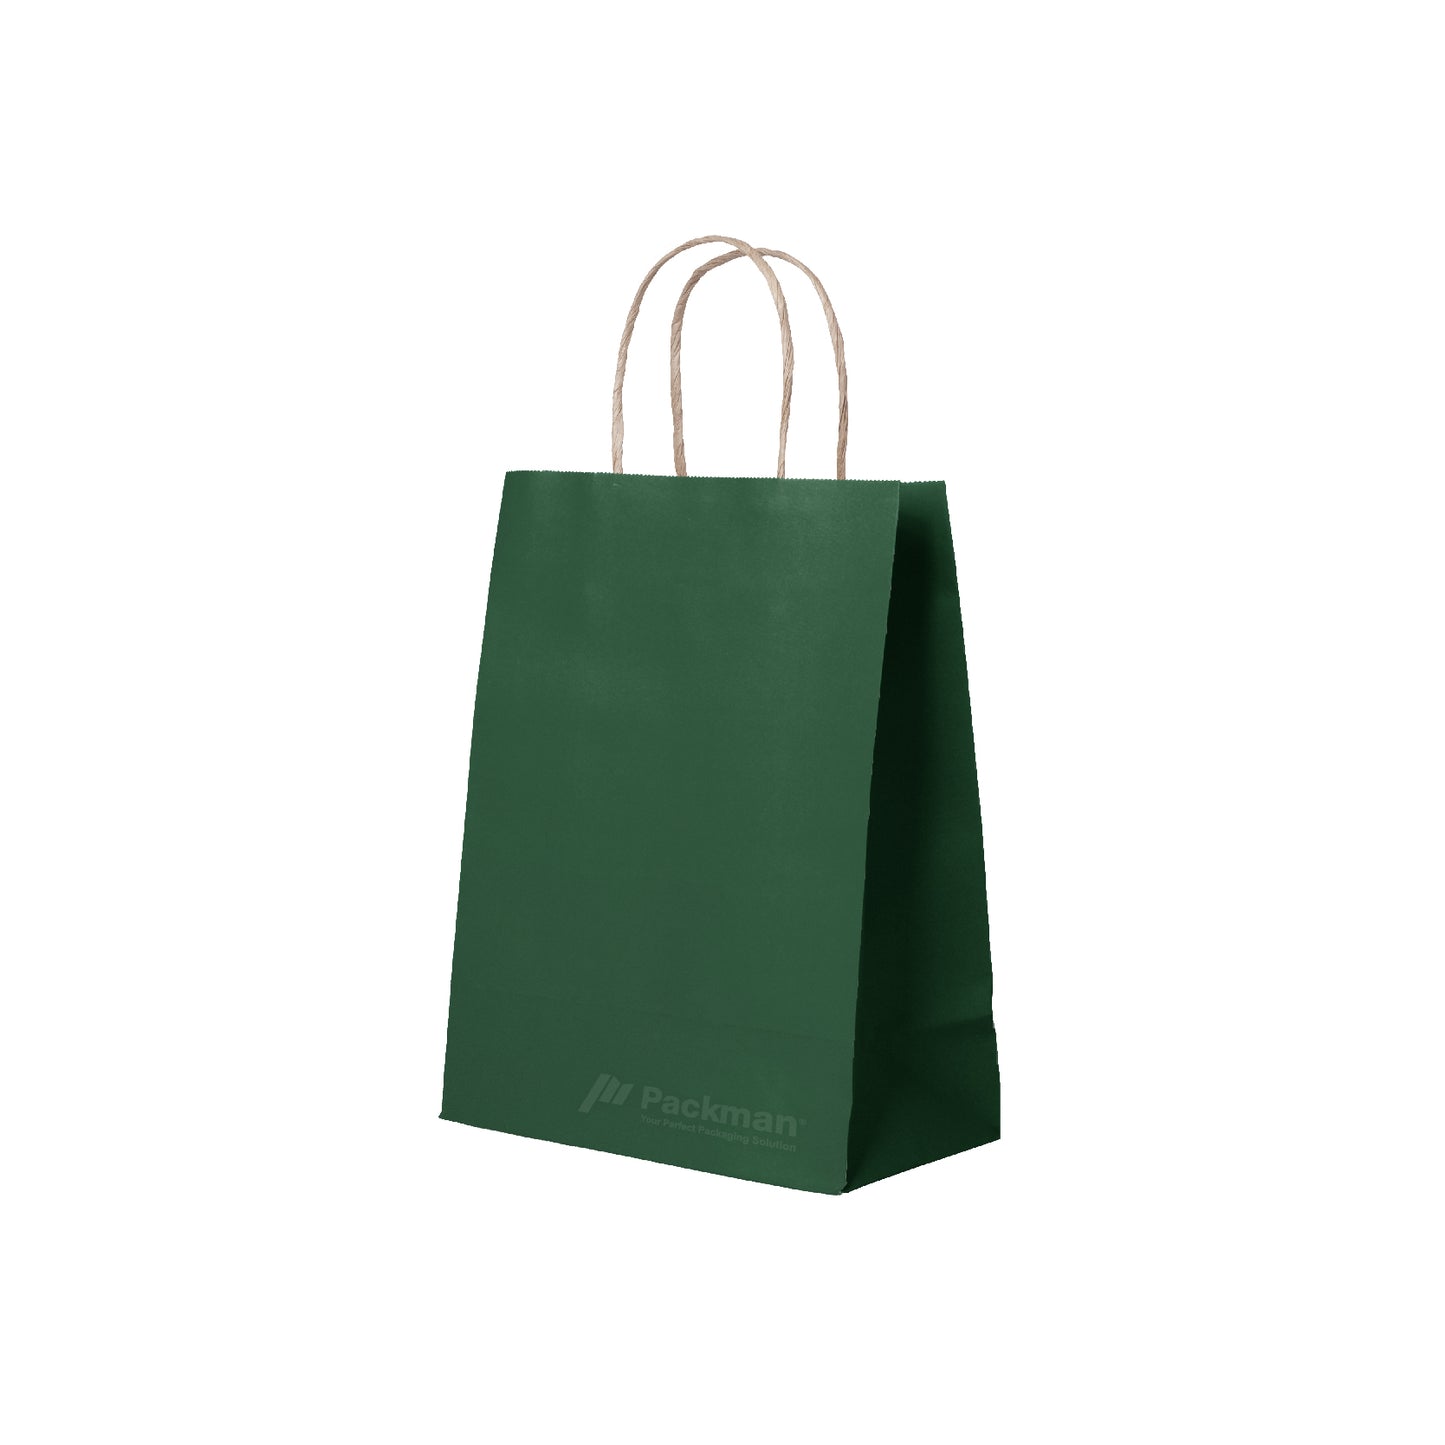 21 x 11 x 27cm Deep Green Paper Bag (100pcs)